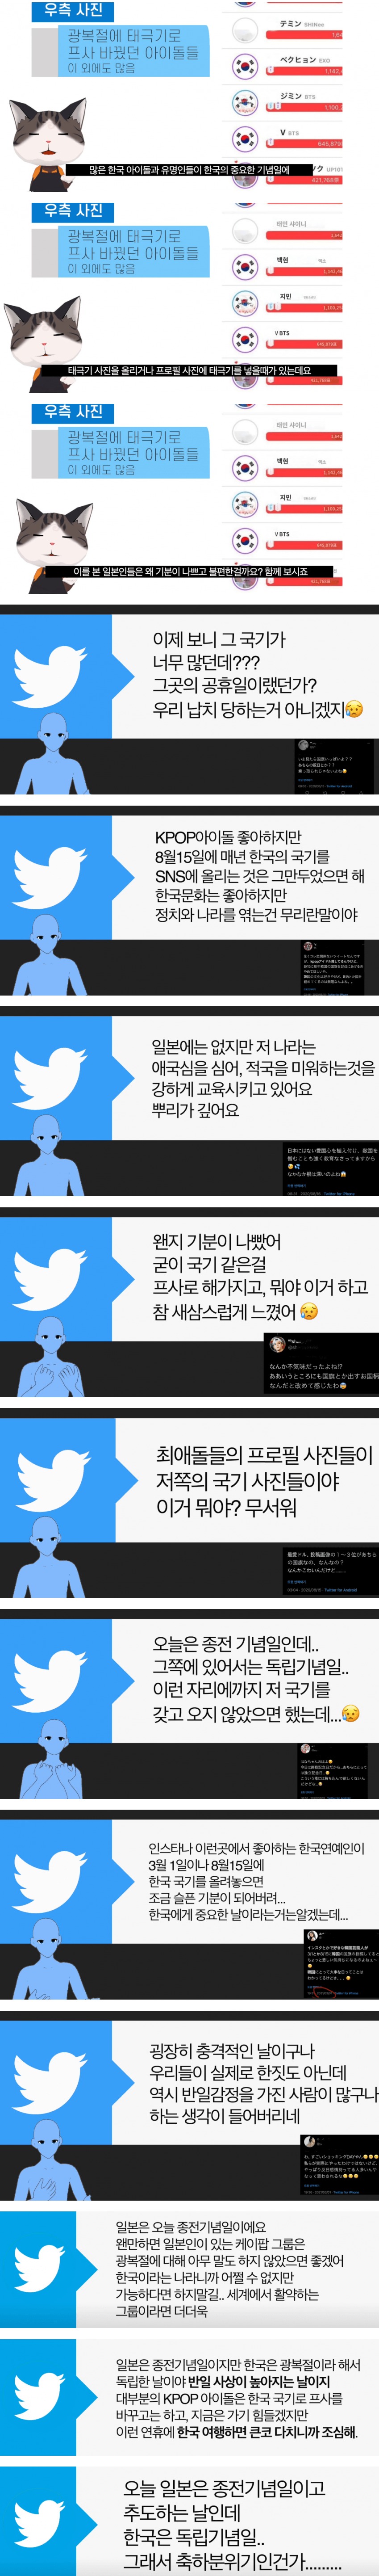 한국 아이돌의 태극기 프사가 불편한 일본 팬들